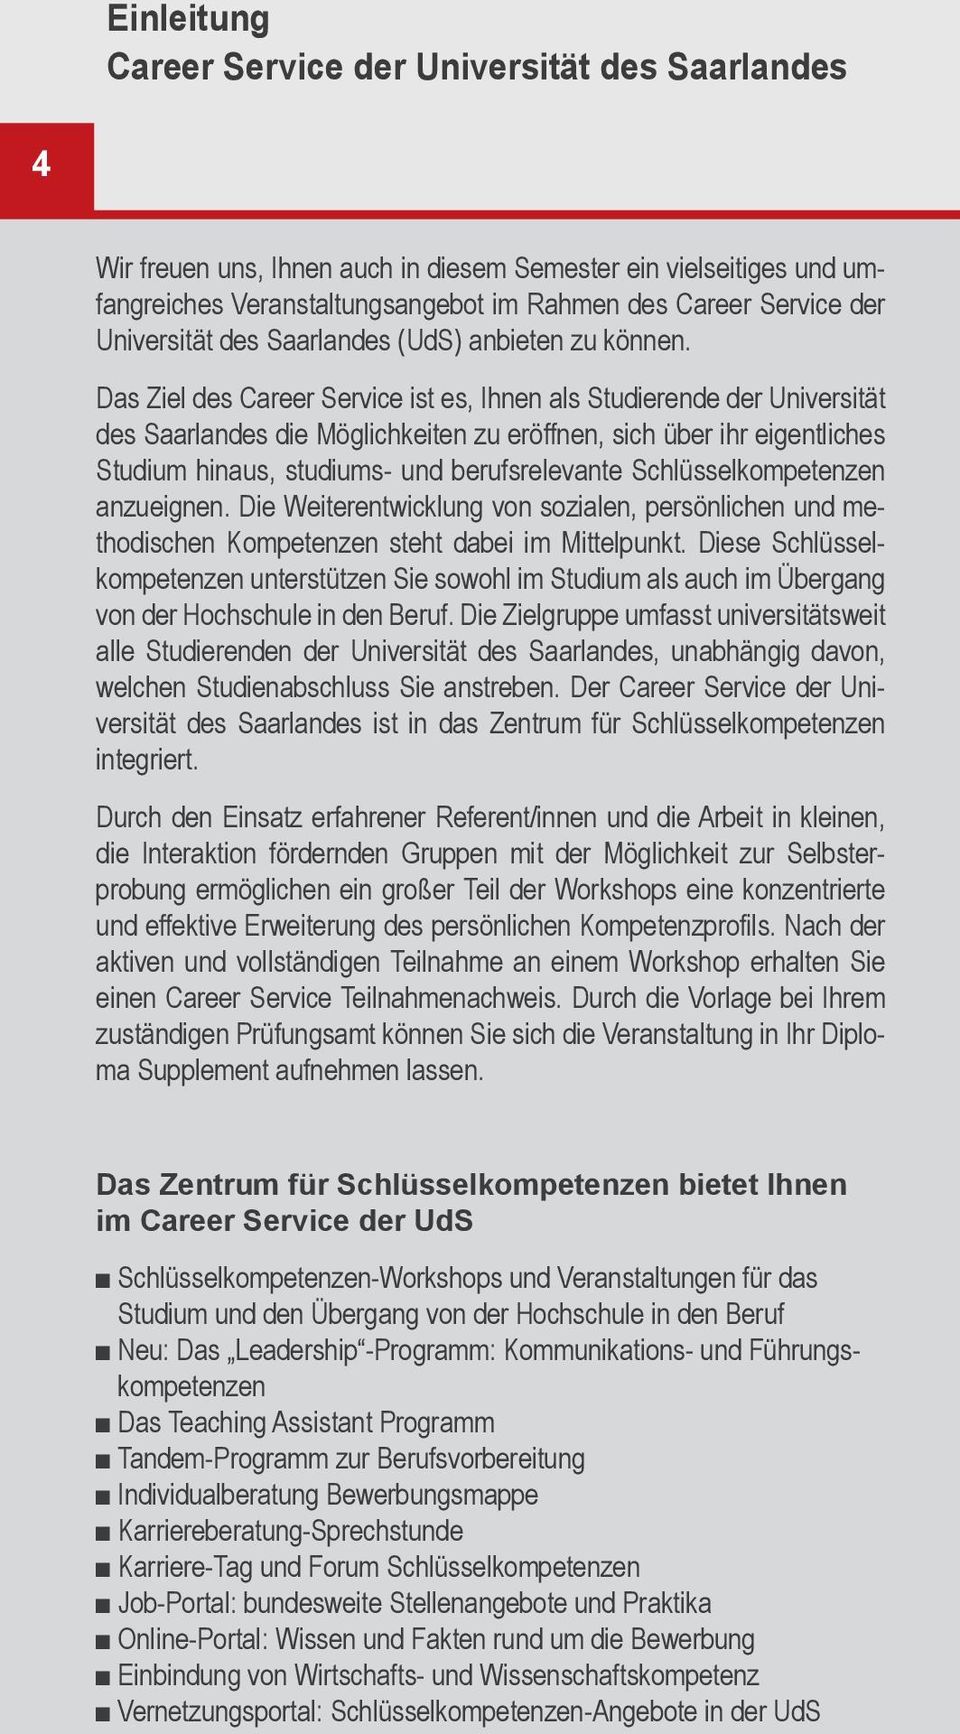 Das Ziel des Career Service ist es, Ihnen als Studierende der Universität des Saarlandes die Möglichkeiten zu eröffnen, sich über ihr eigentliches Studium hinaus, studiums- und berufsrelevante